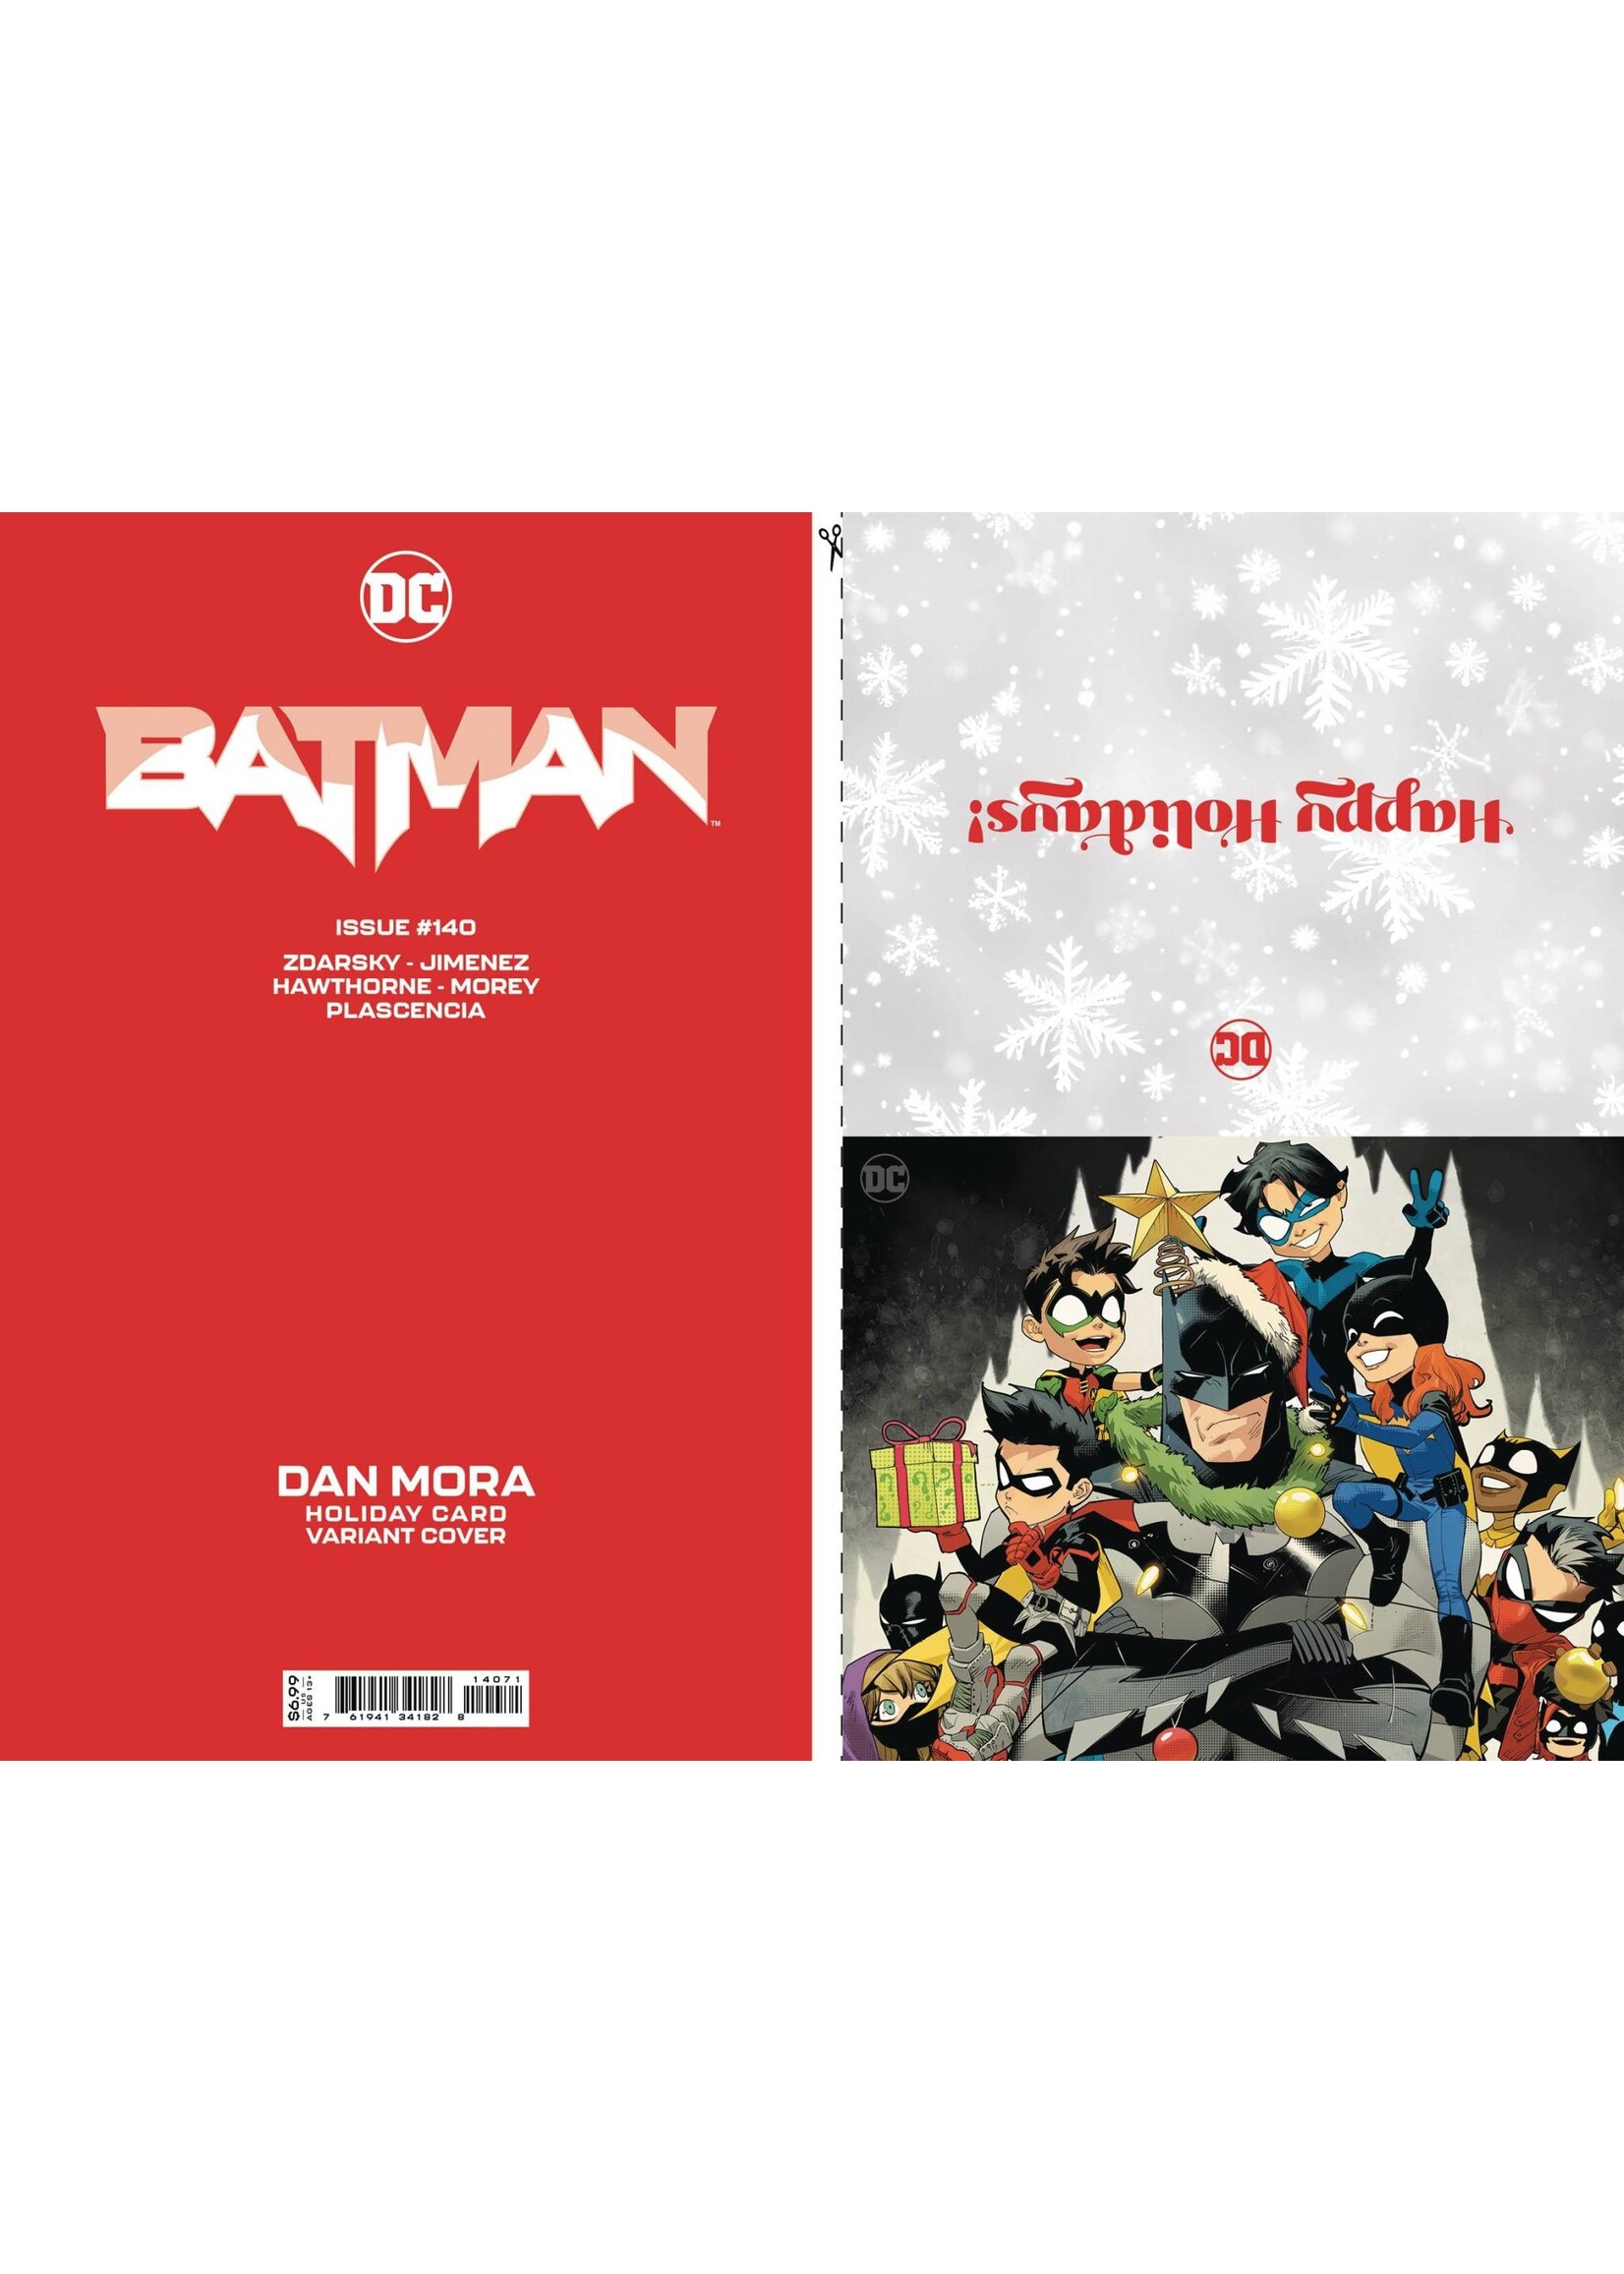 DC COMICS BATMAN #140 HOLIDAY